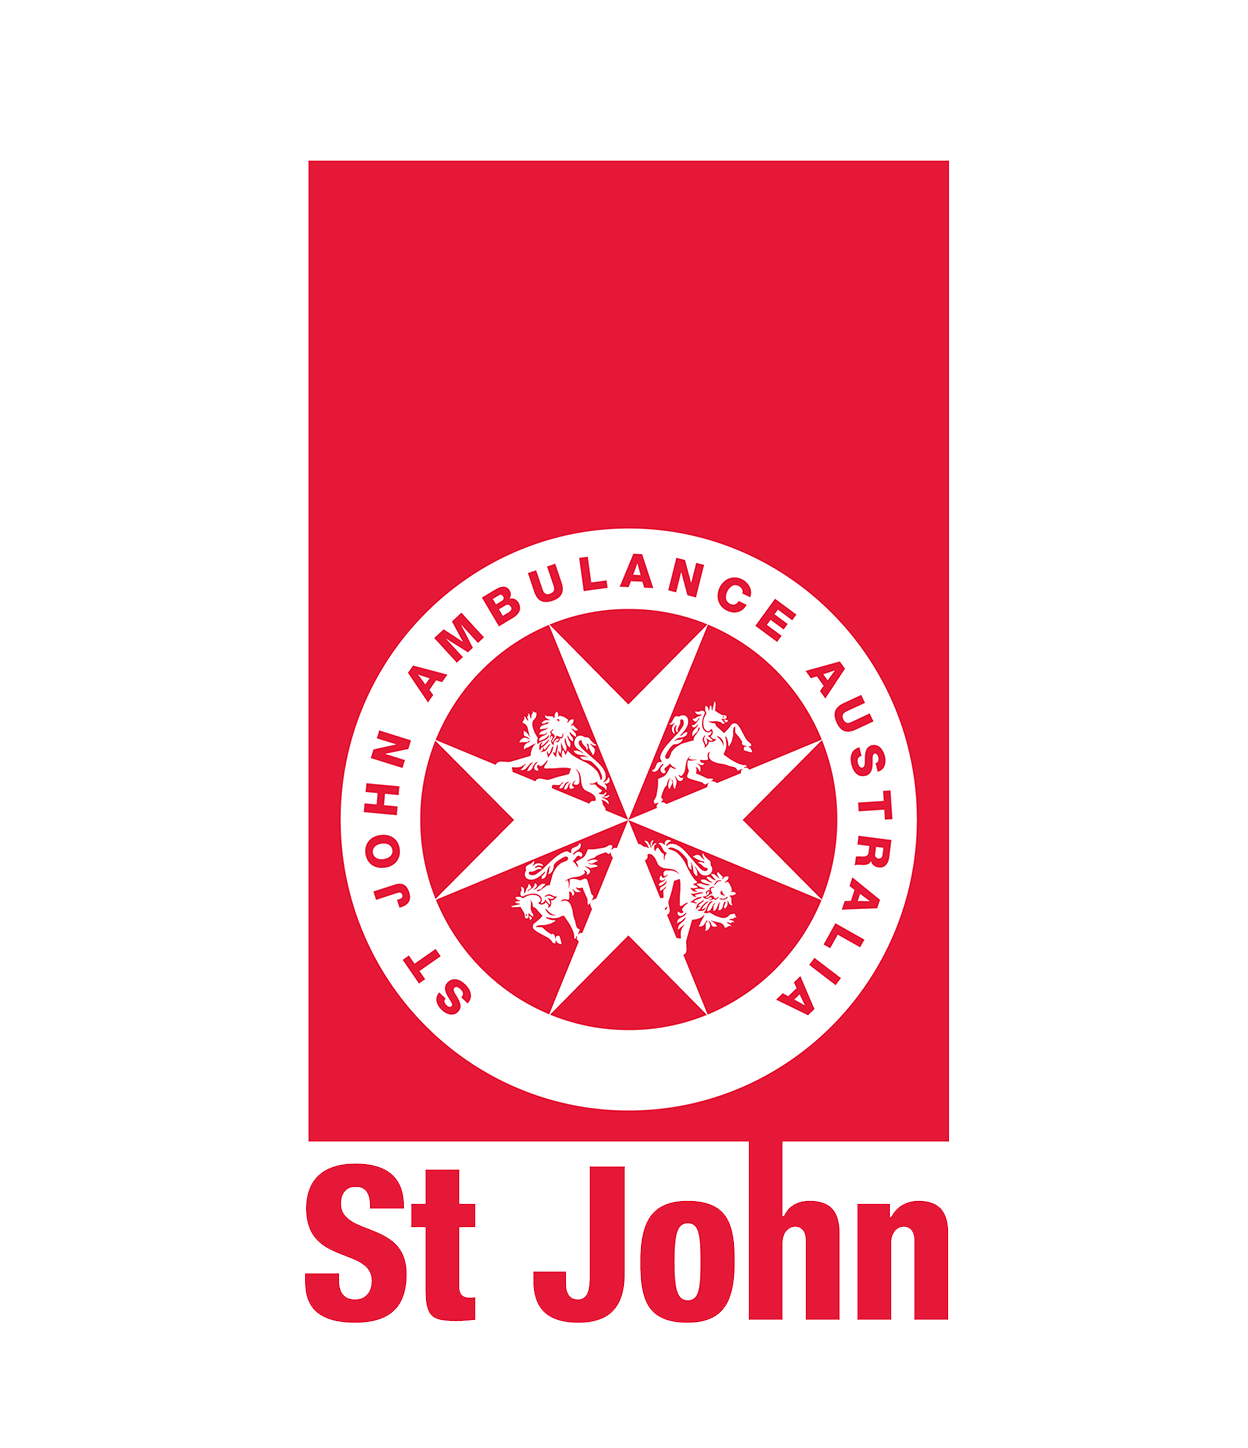 St John - logo